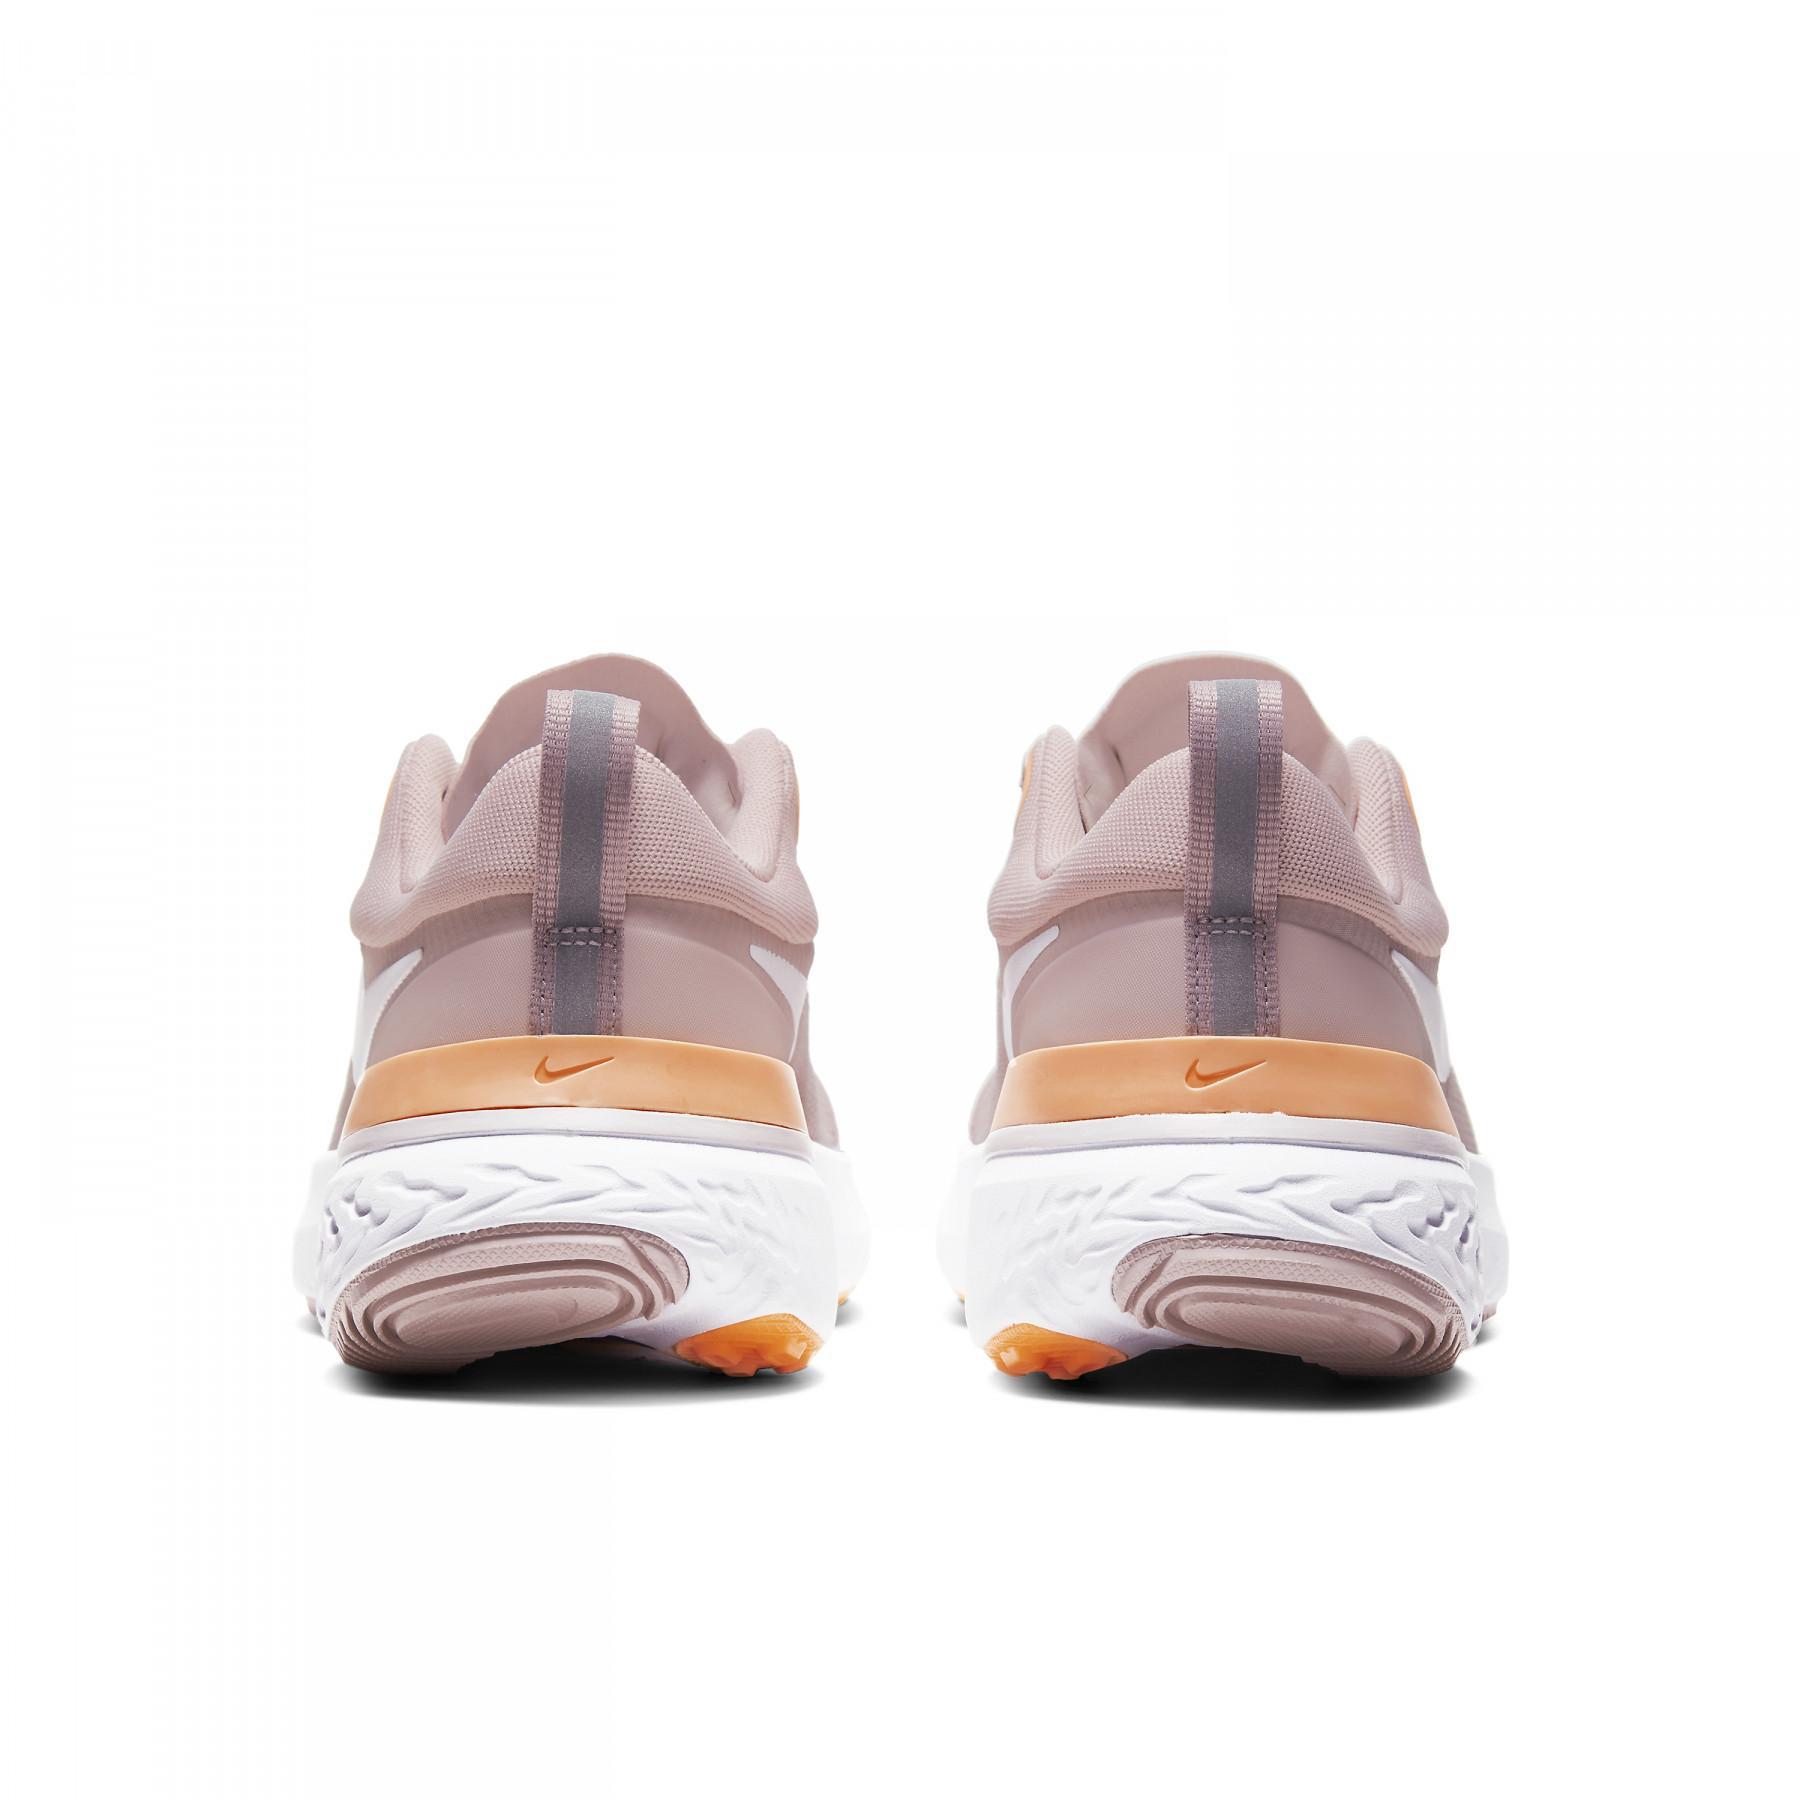 Chaussures de running femme Nike React Miler